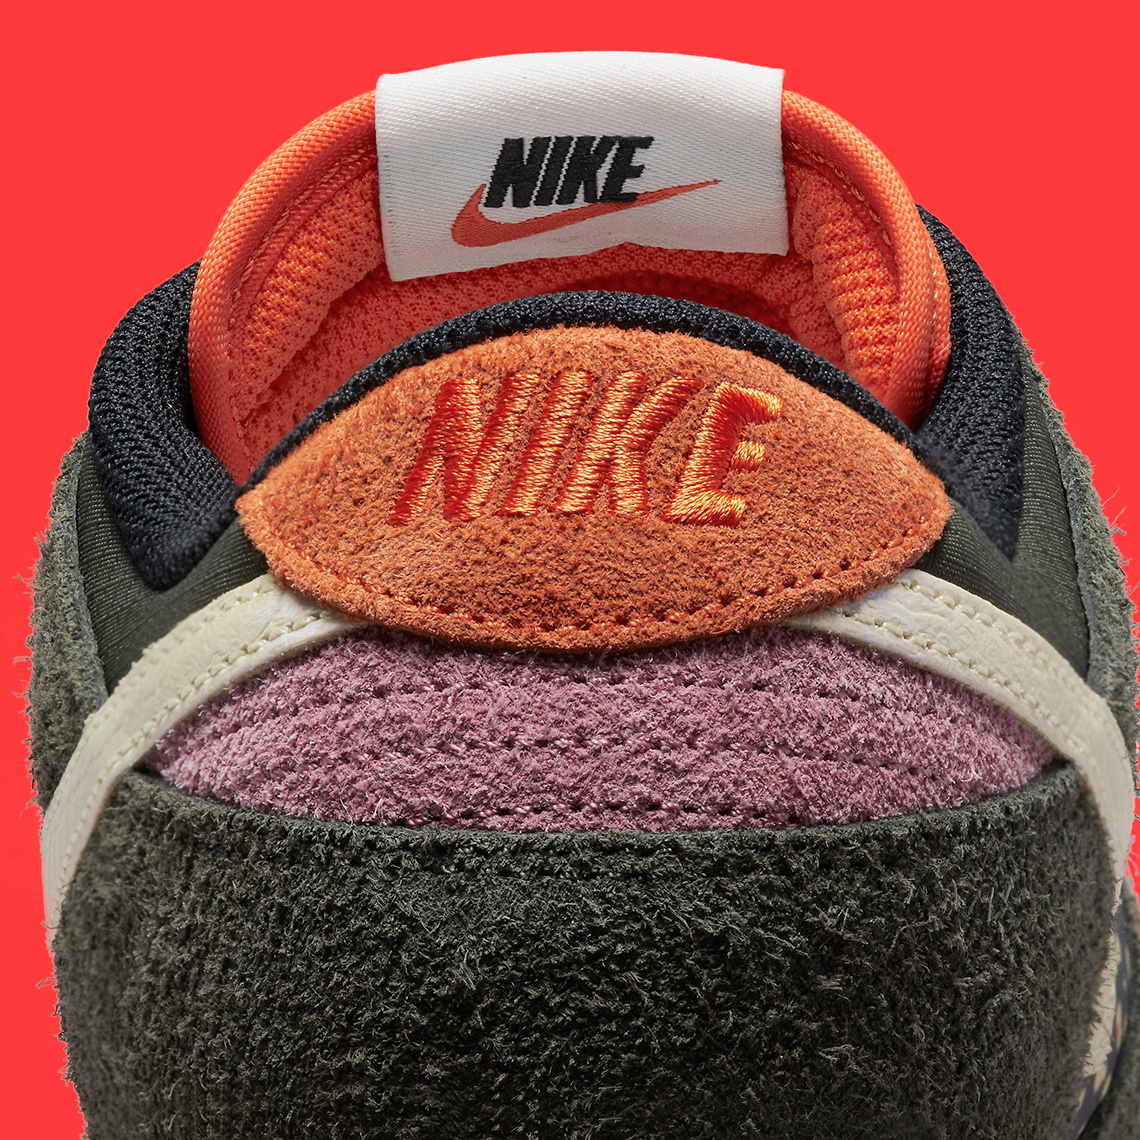 Nike Lunar Trout 2 Turf (Rainbow Trout) - Sneaker Freaker